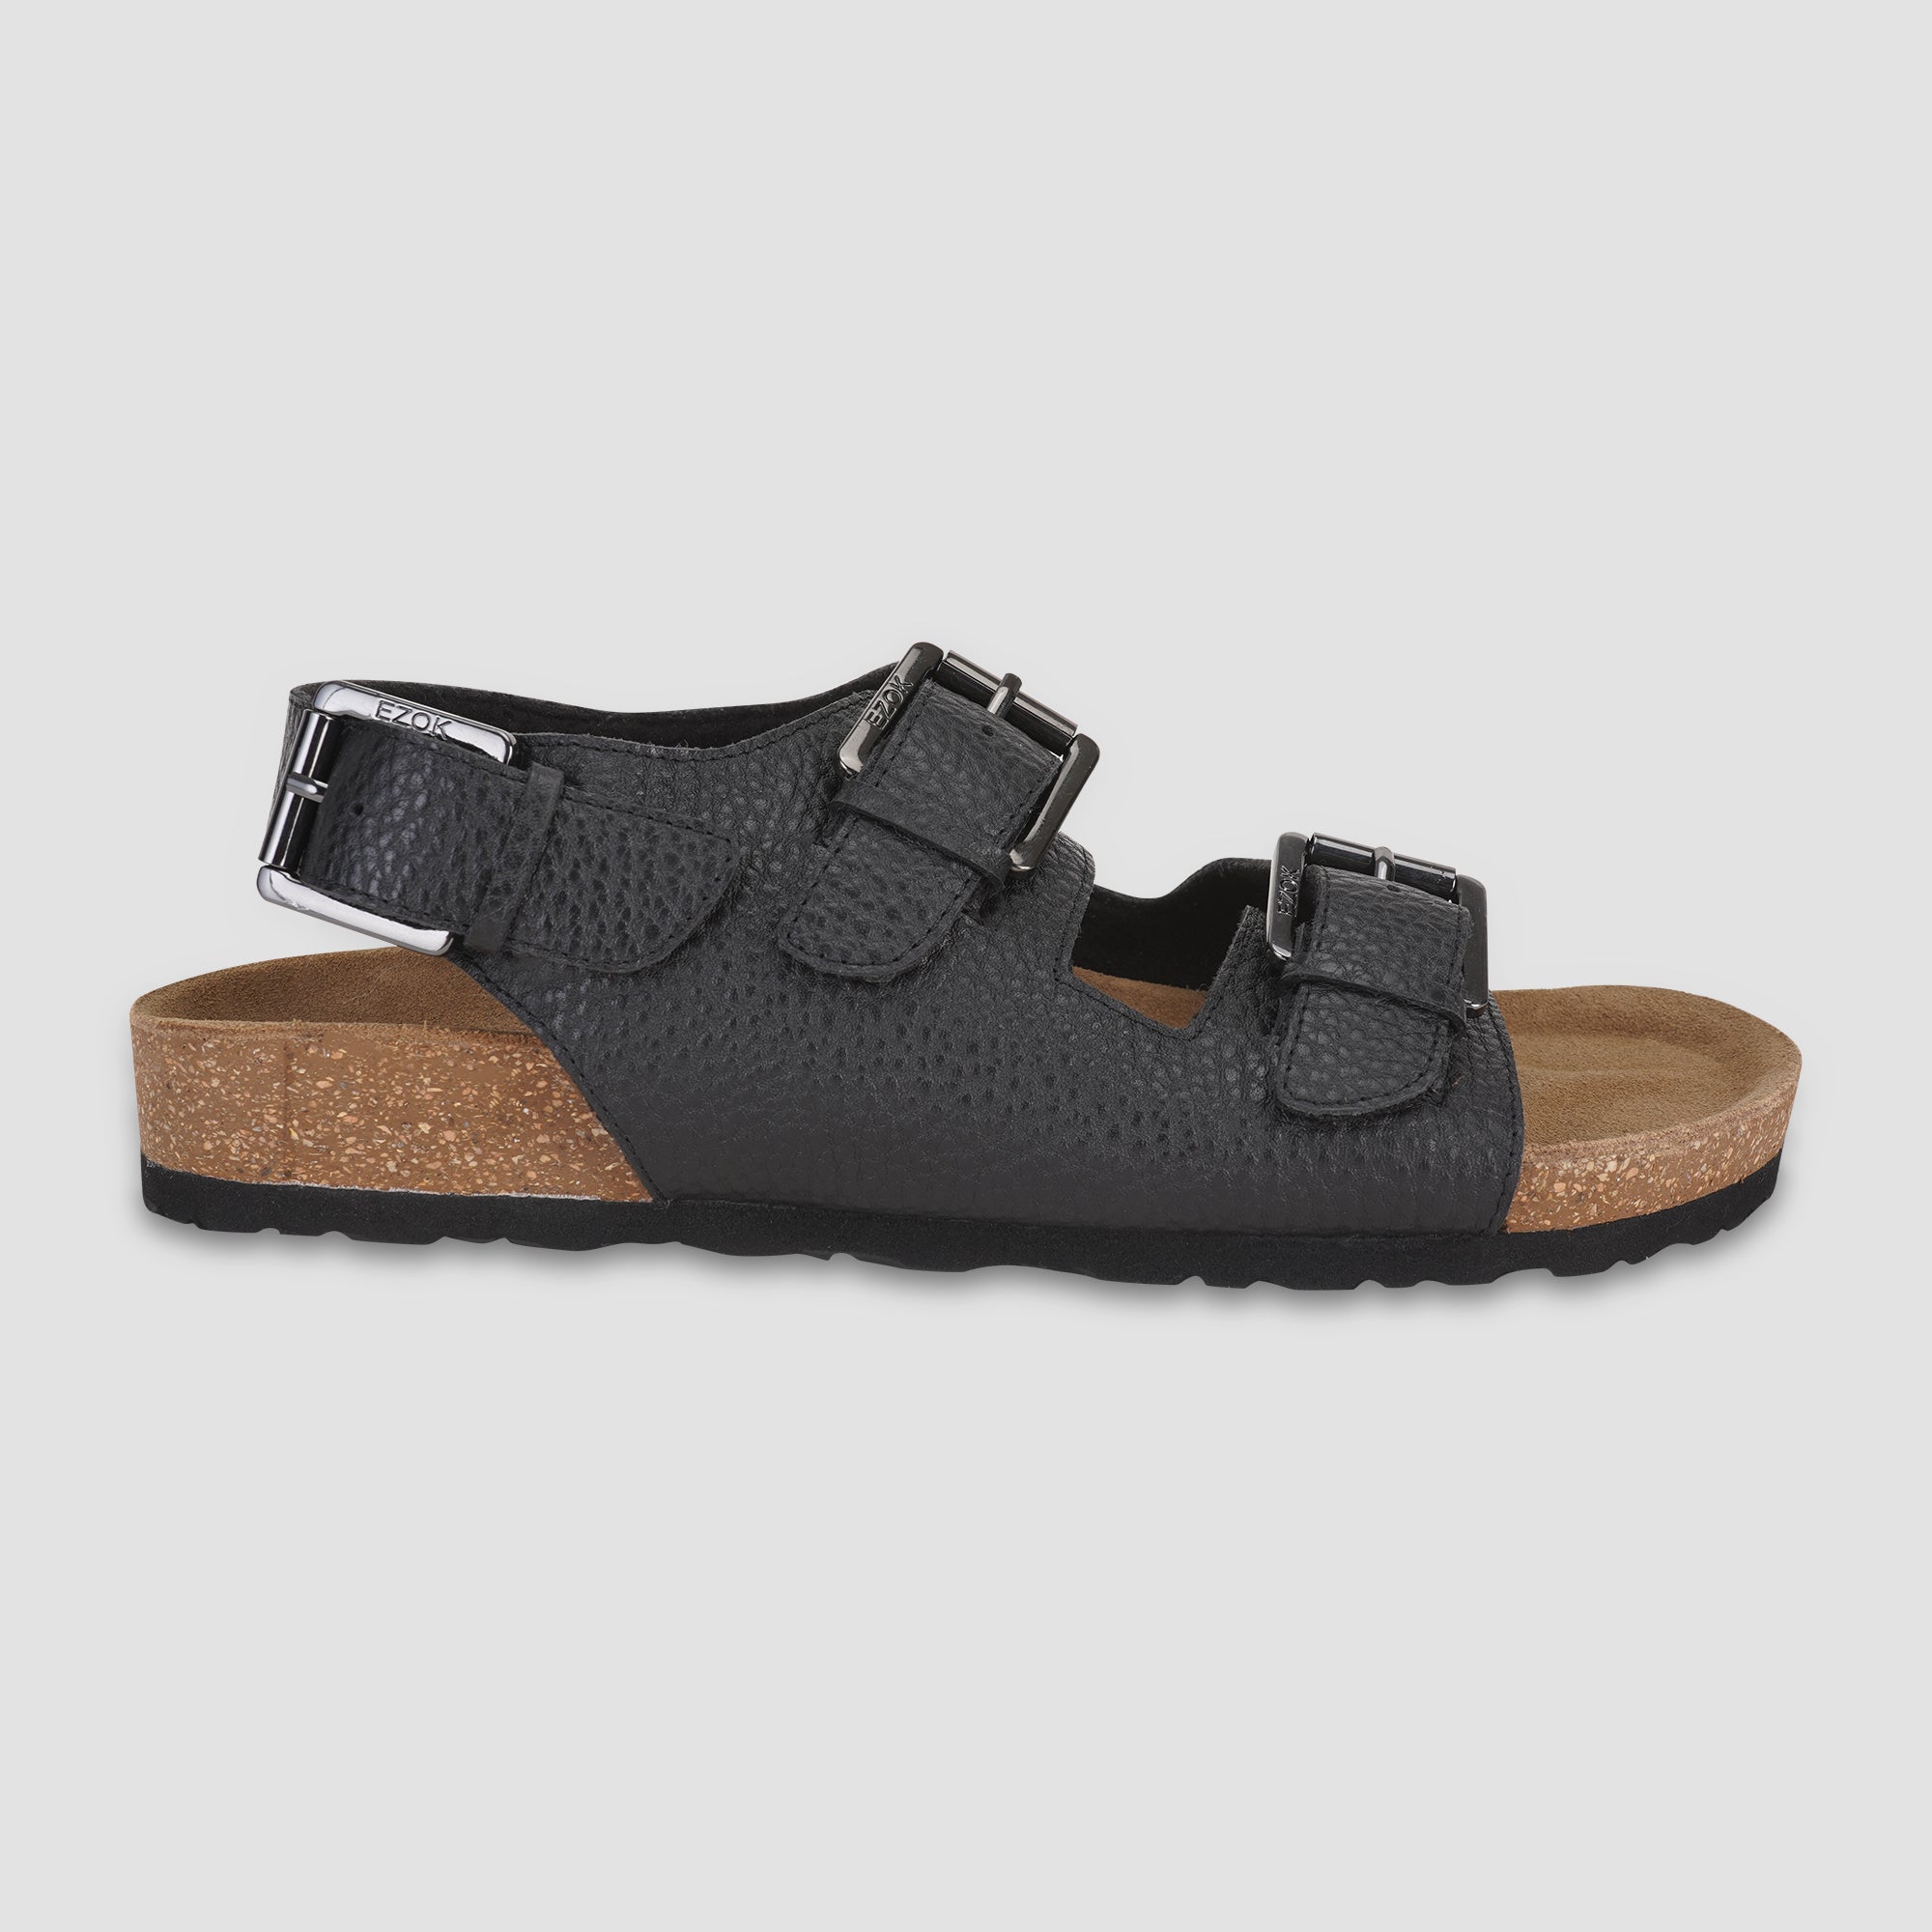 Ezok Black Leather Sandal For Men